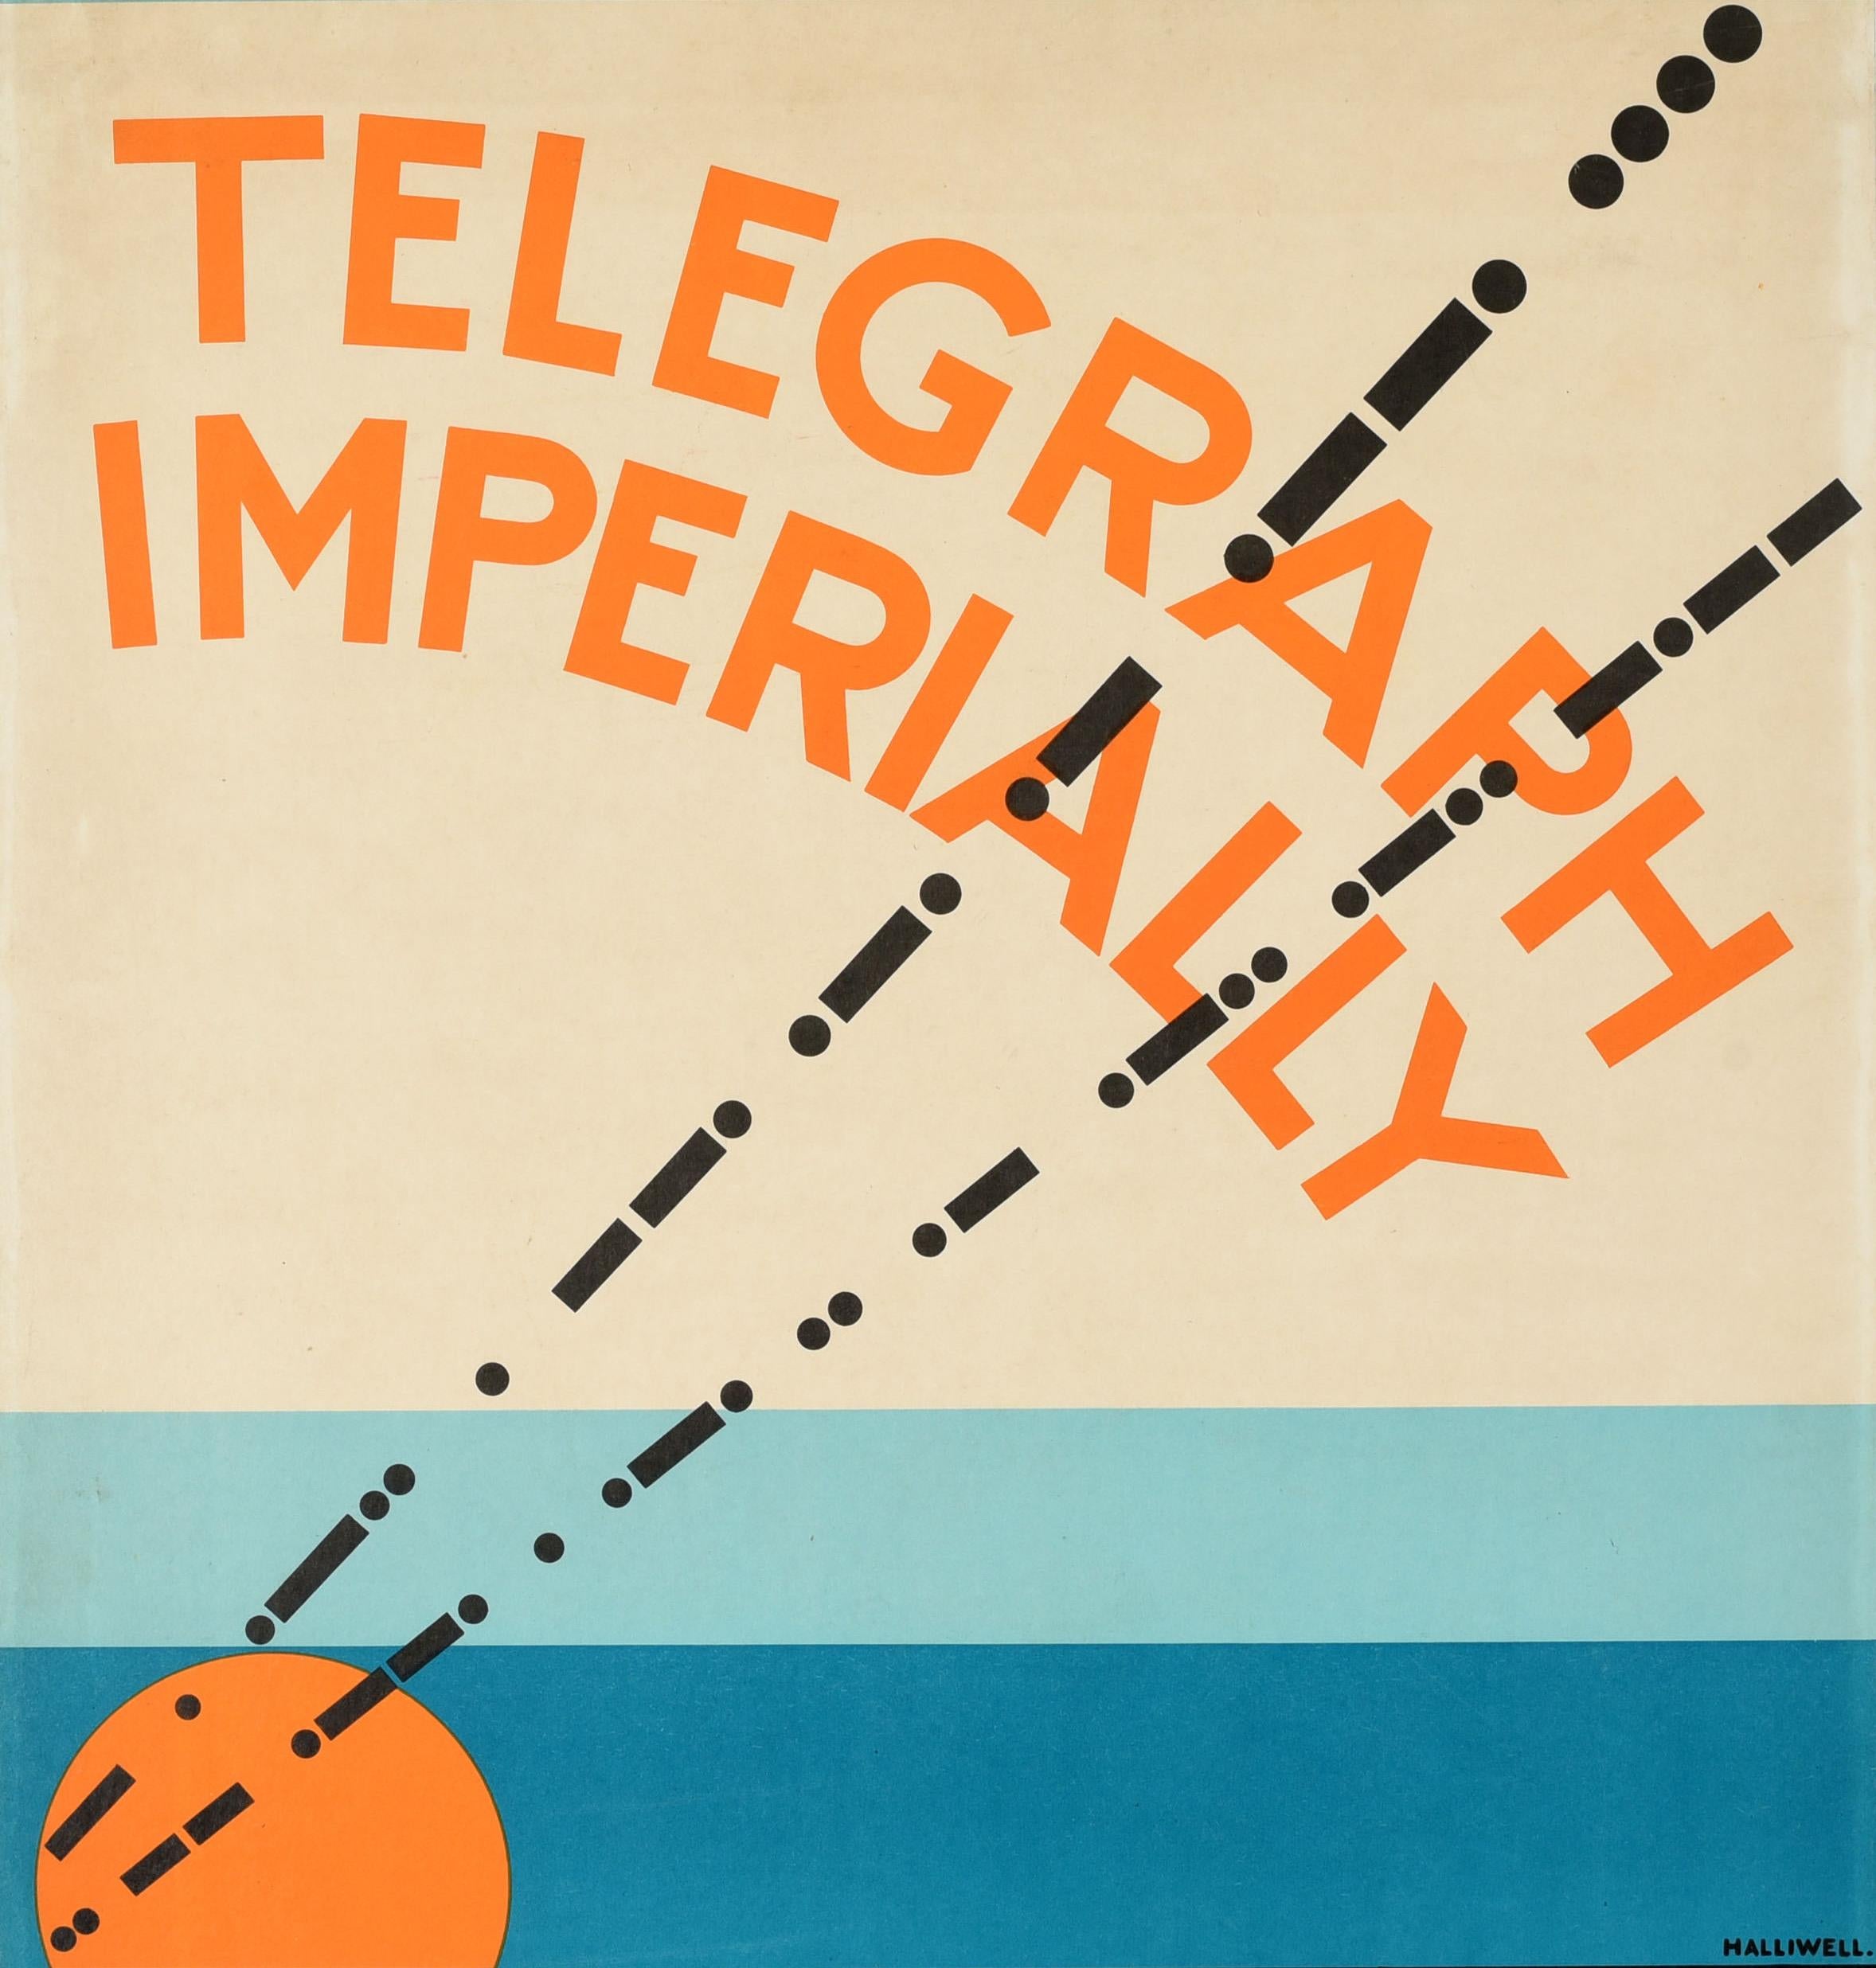 Original-Vintage-Werbeplakat Telegraph Imperially Marconi, Art dco-Design – Print von A.E. Halliwell